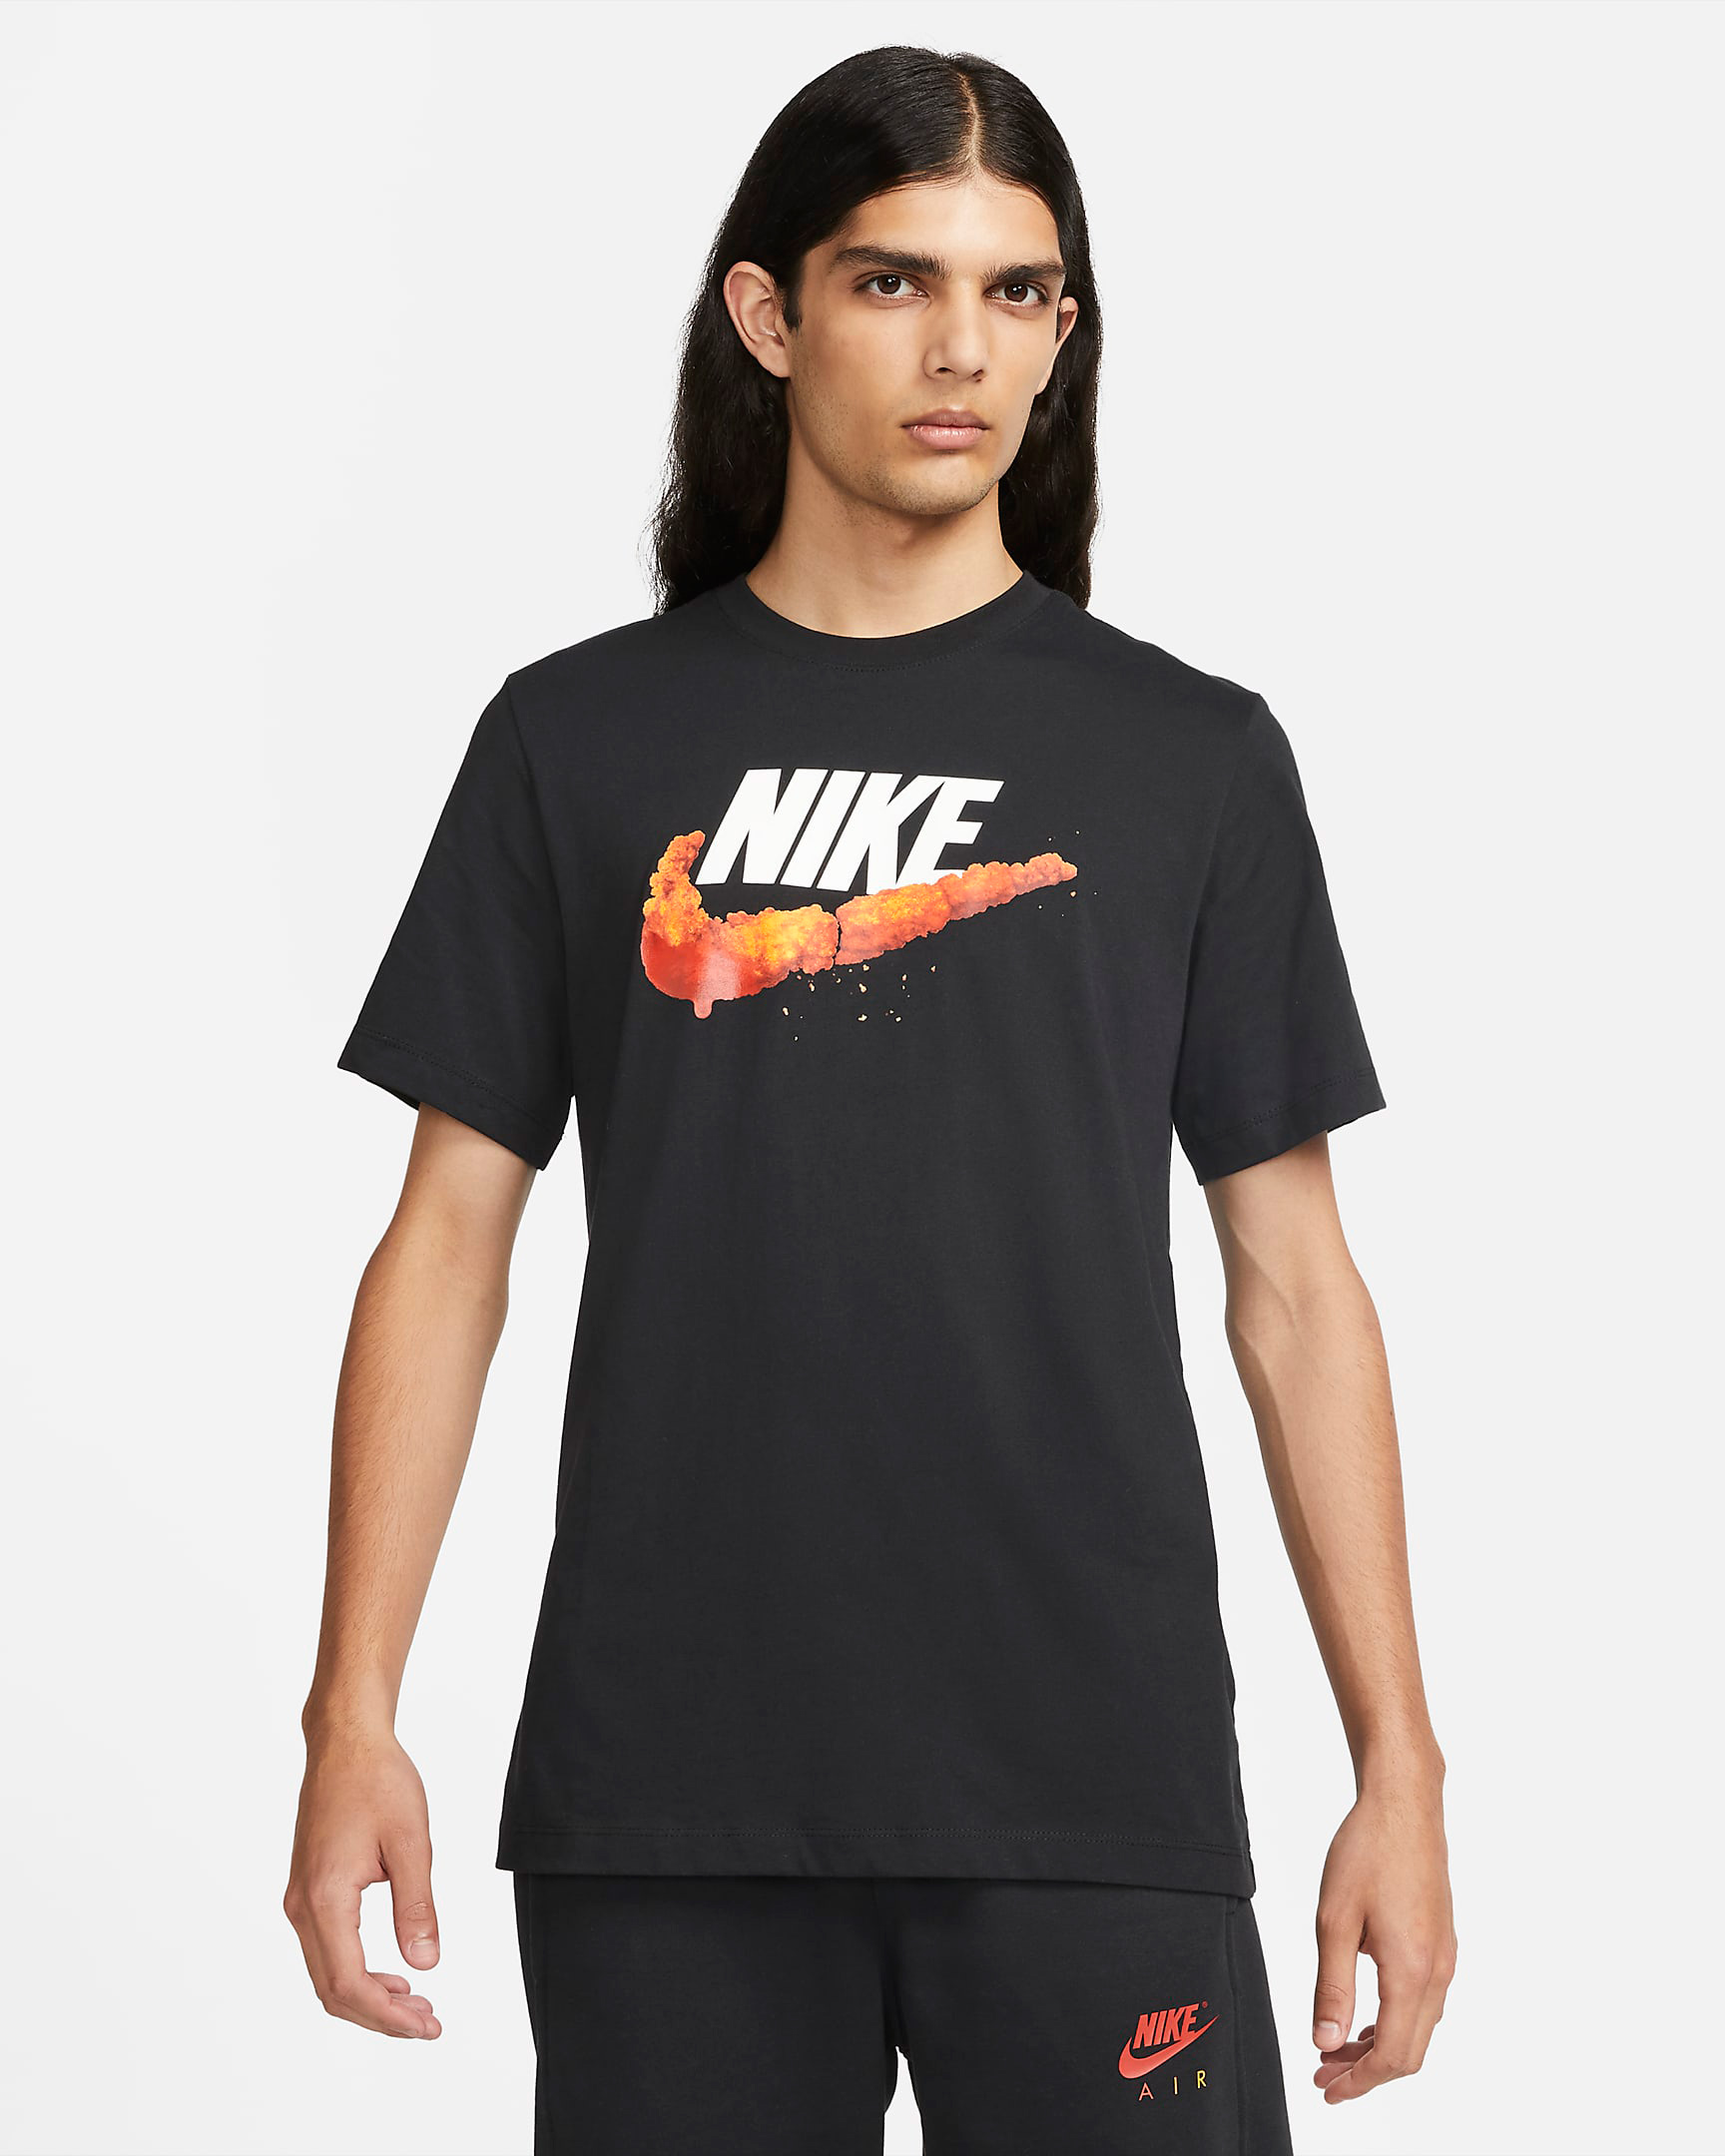 nike-deep-fried-shrimp-t-shirt-black-orange